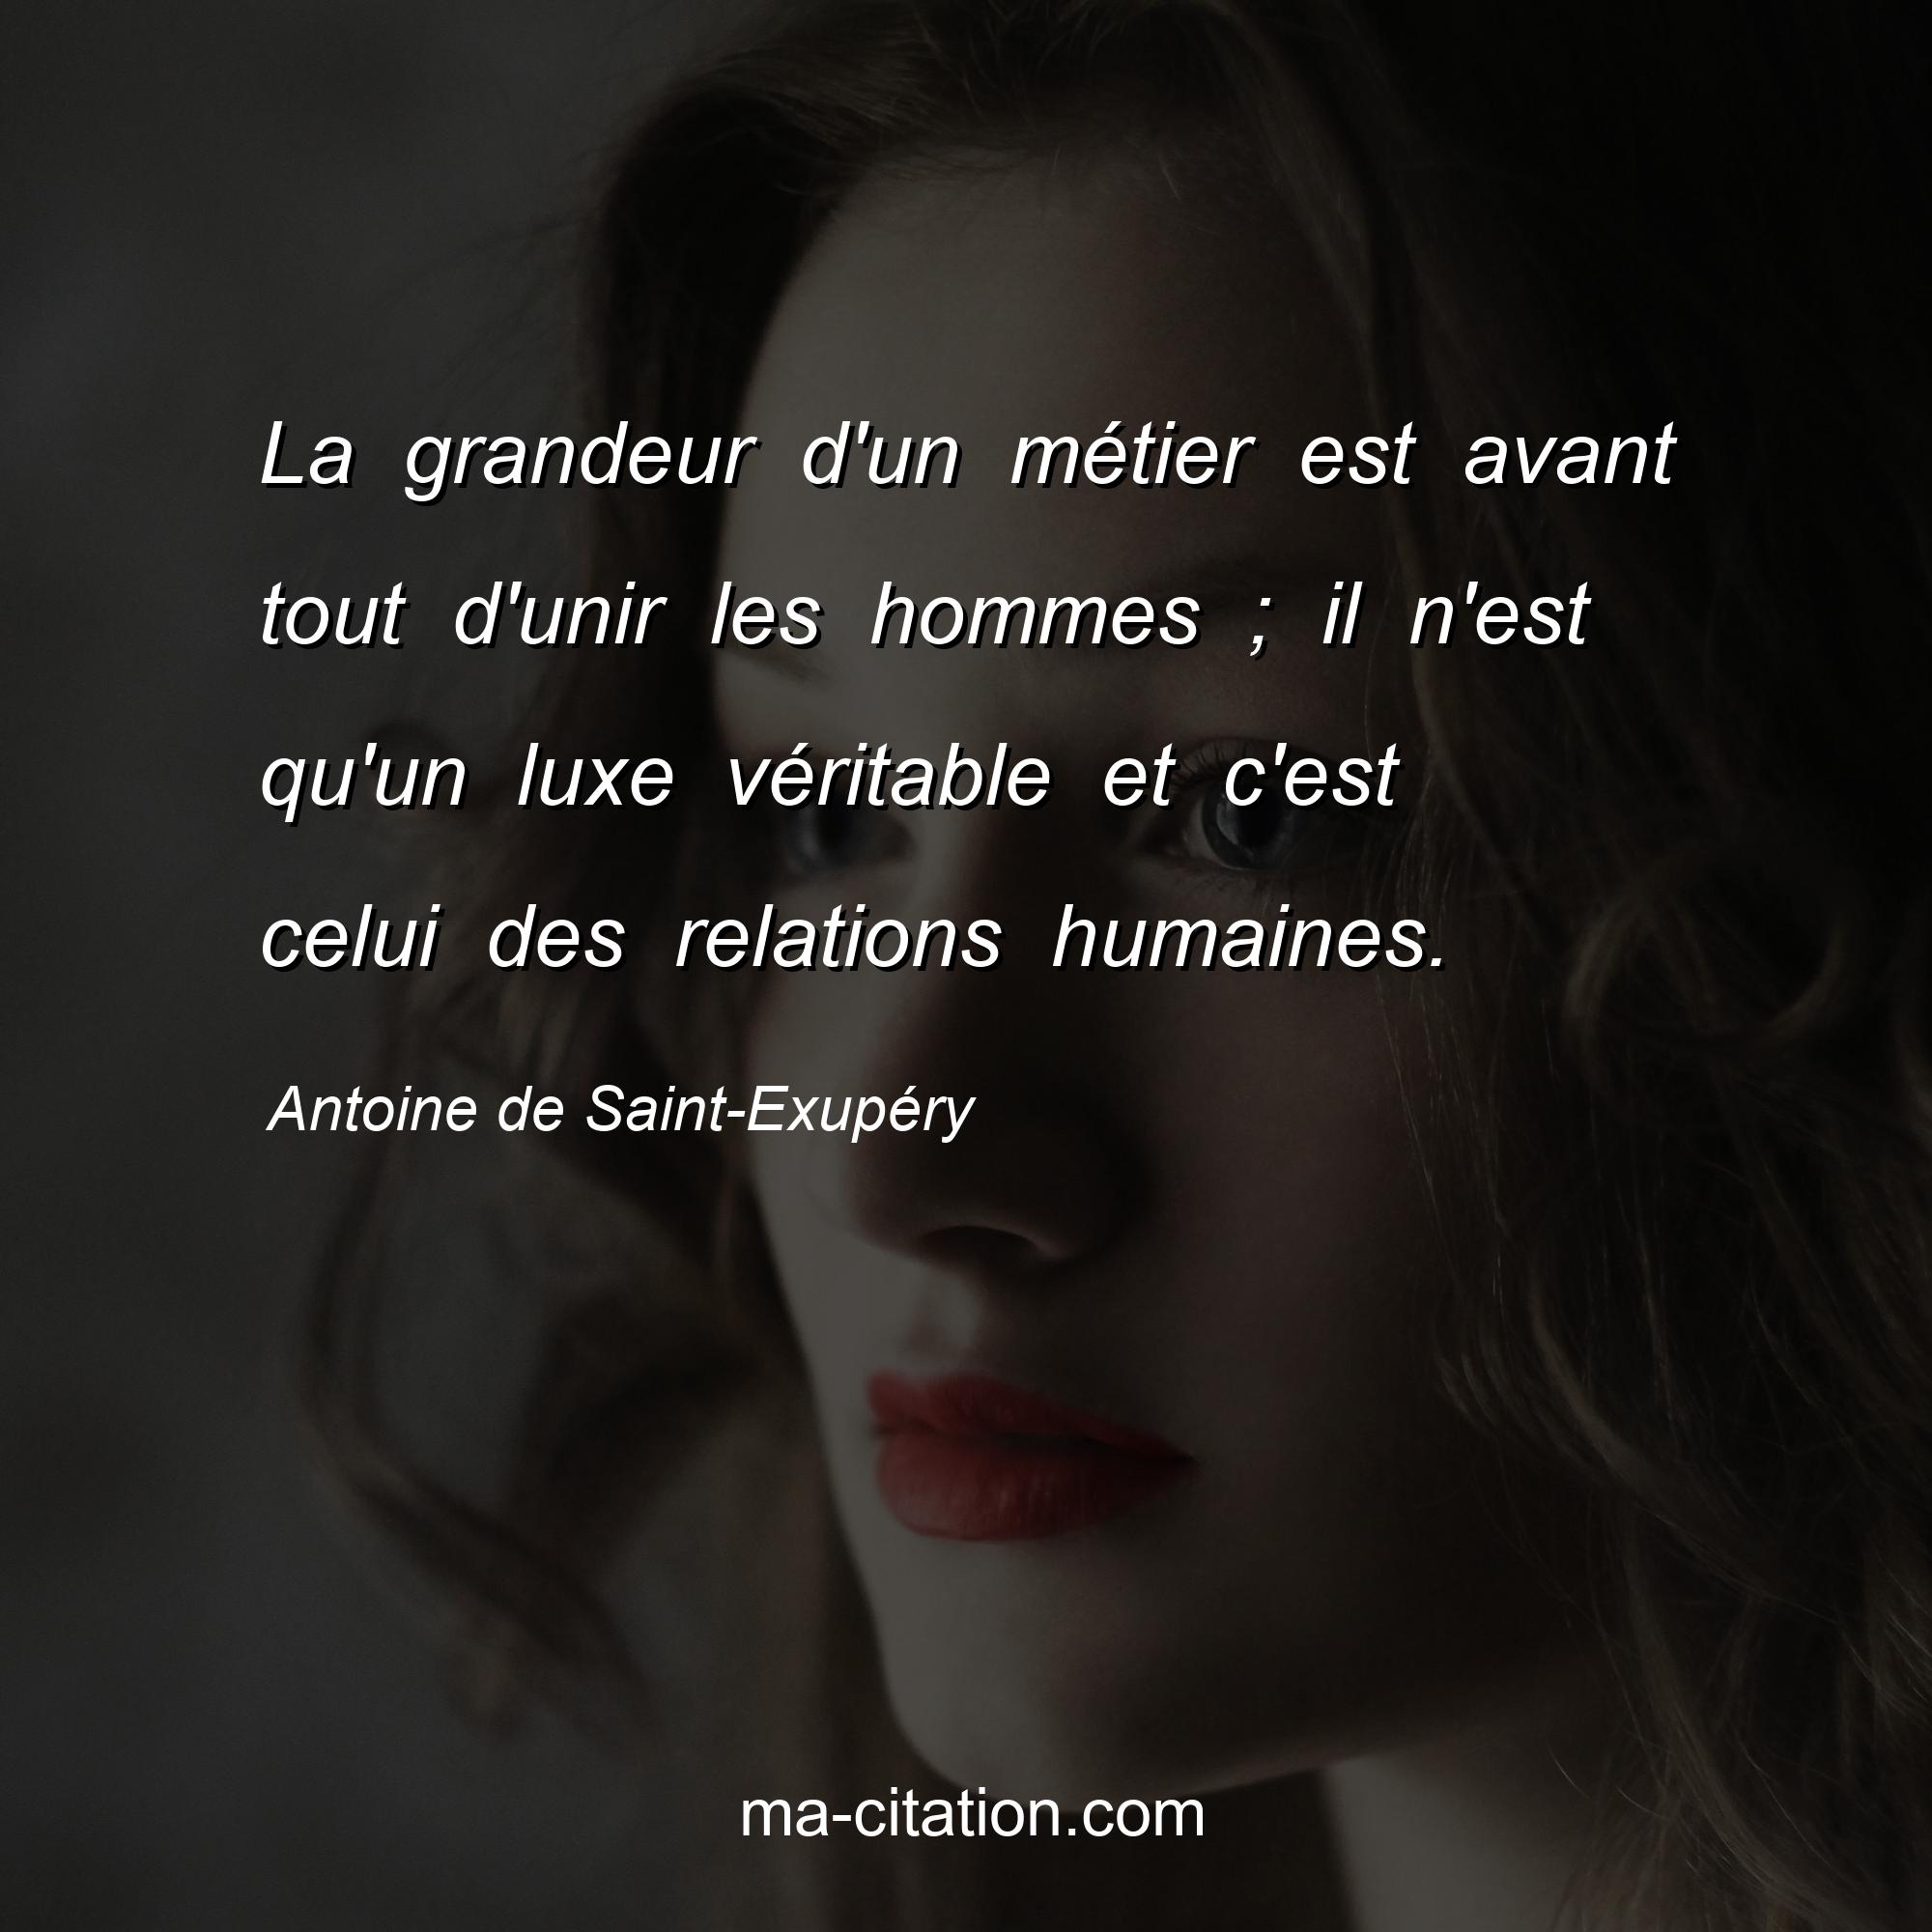 Antoine de Saint-Exupéry : La grandeur d'un métier est avant tout d'unir les hommes ; il n'est qu'un luxe véritable et c'est celui des relations humaines.